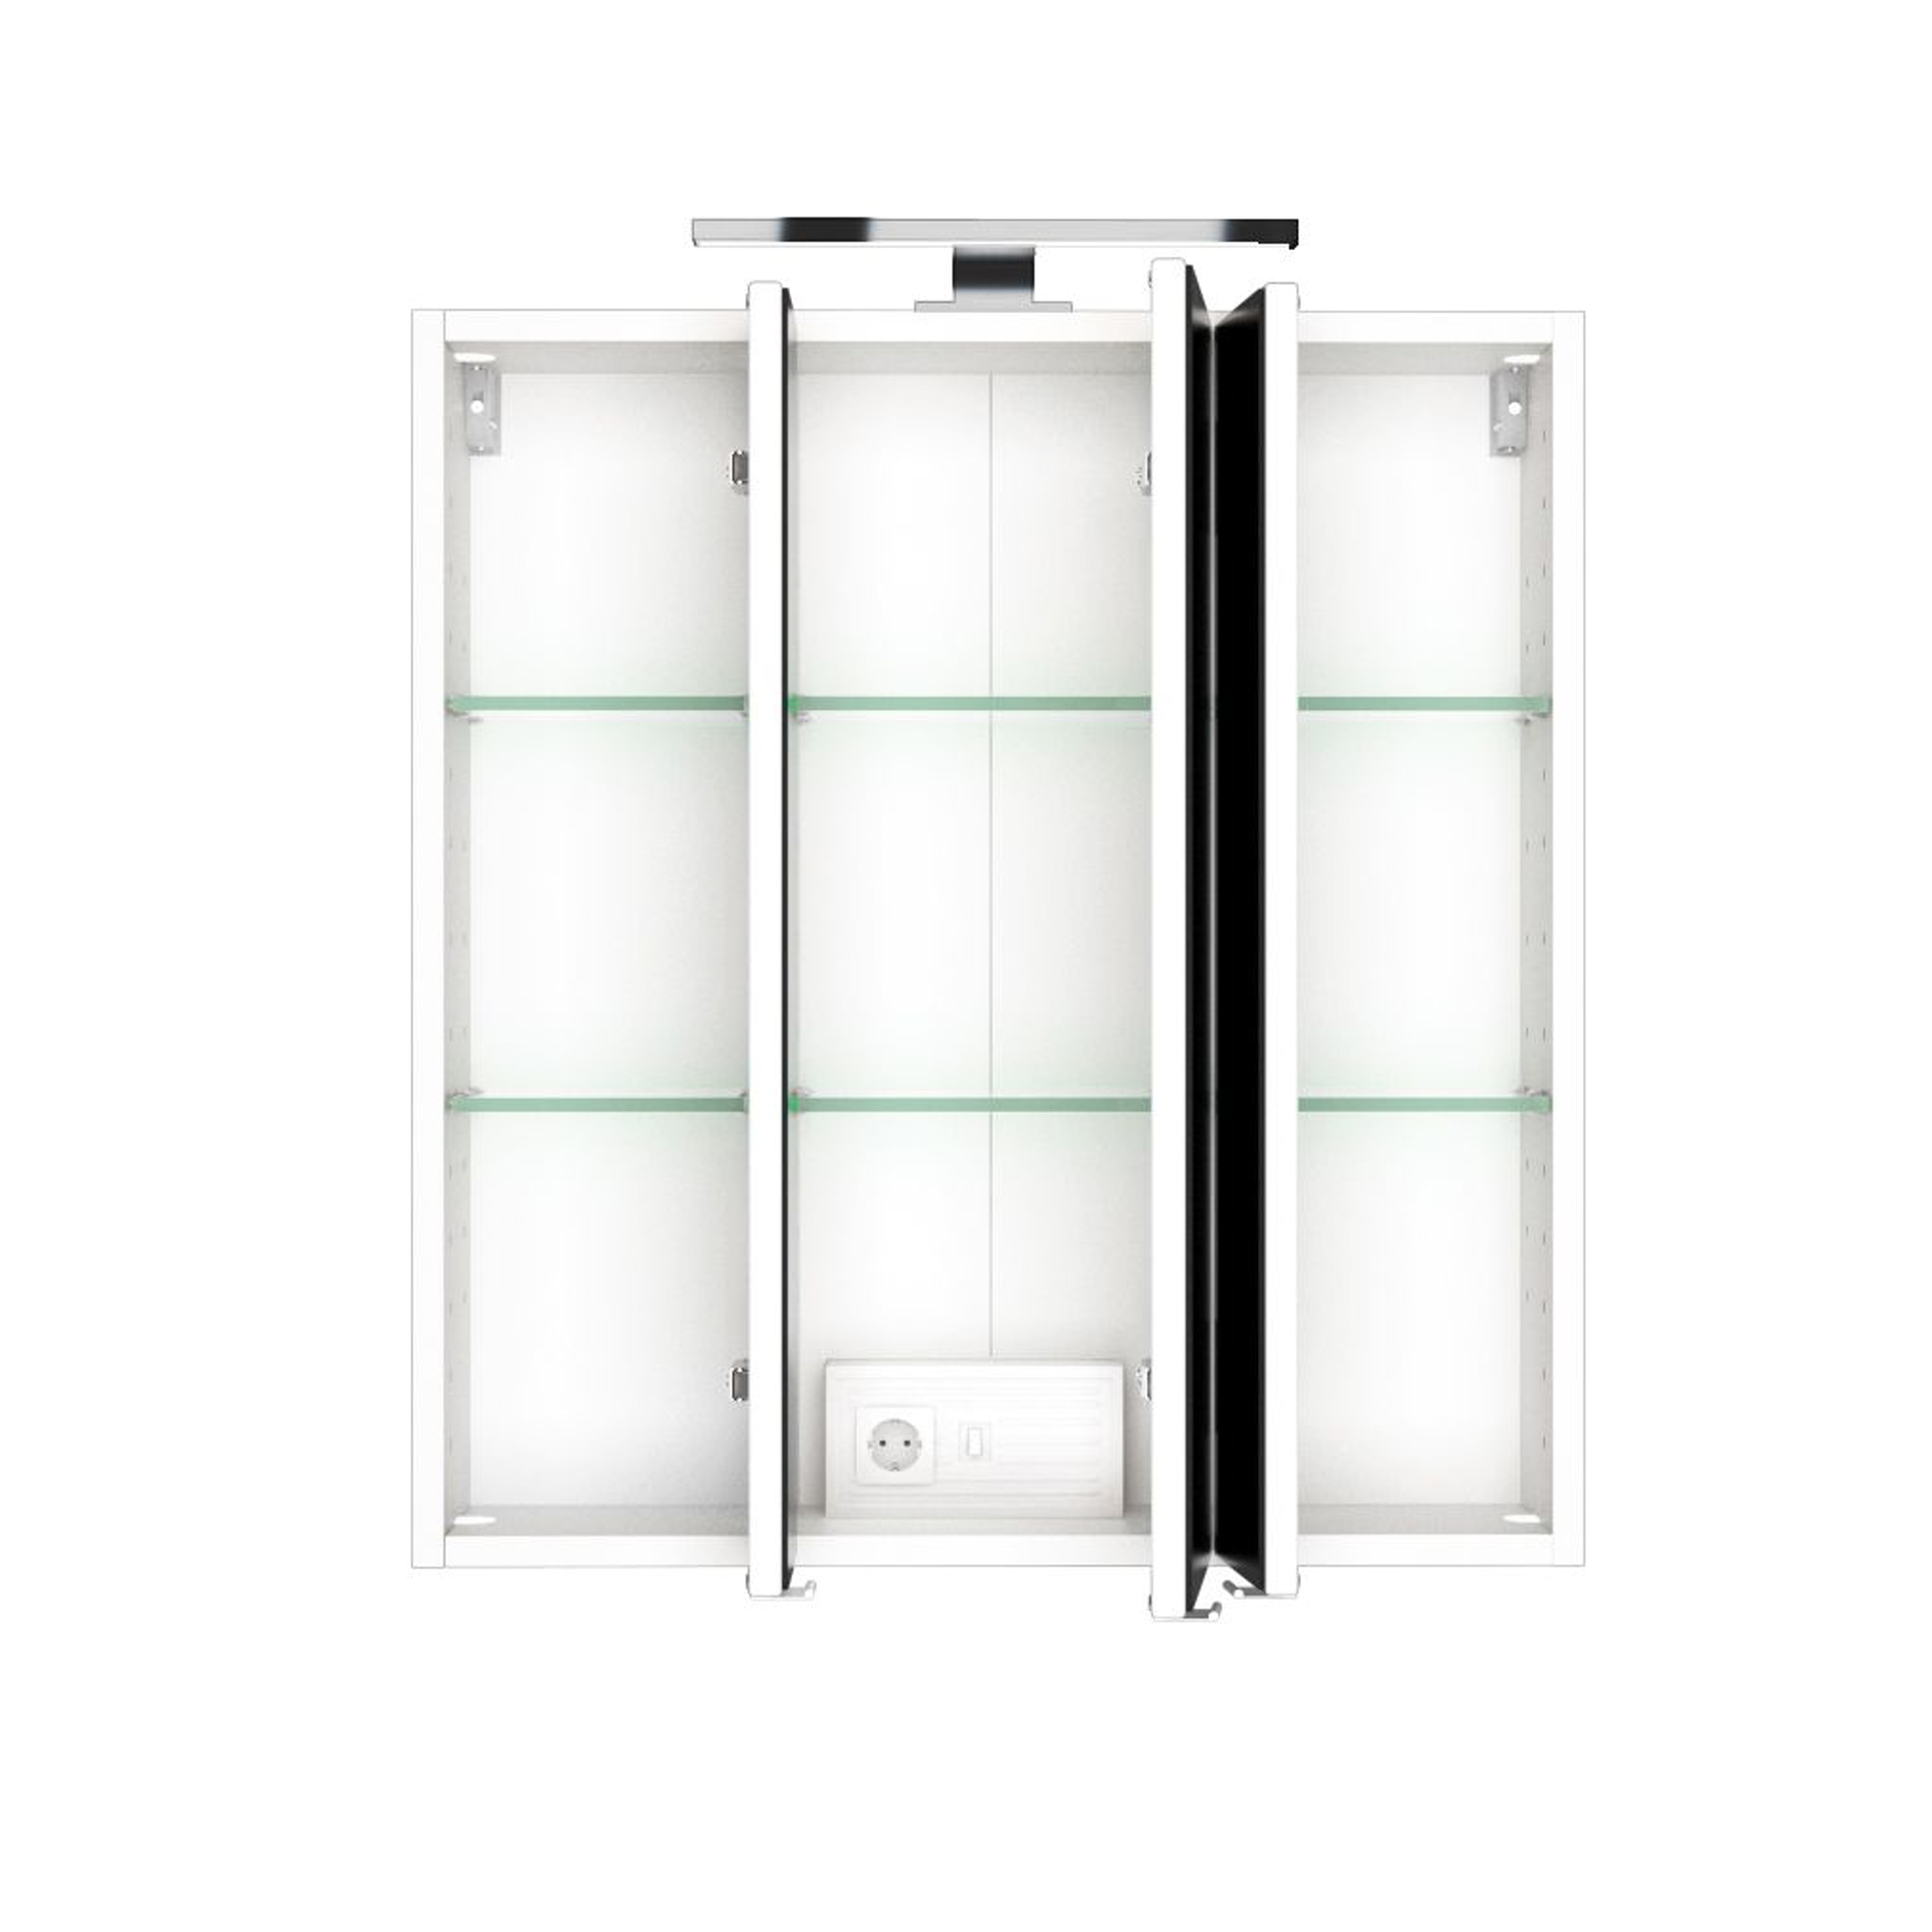 Bad-Spiegelschrank - 3-türig, mit Beleuchtung - 60 cm breit - Weiß